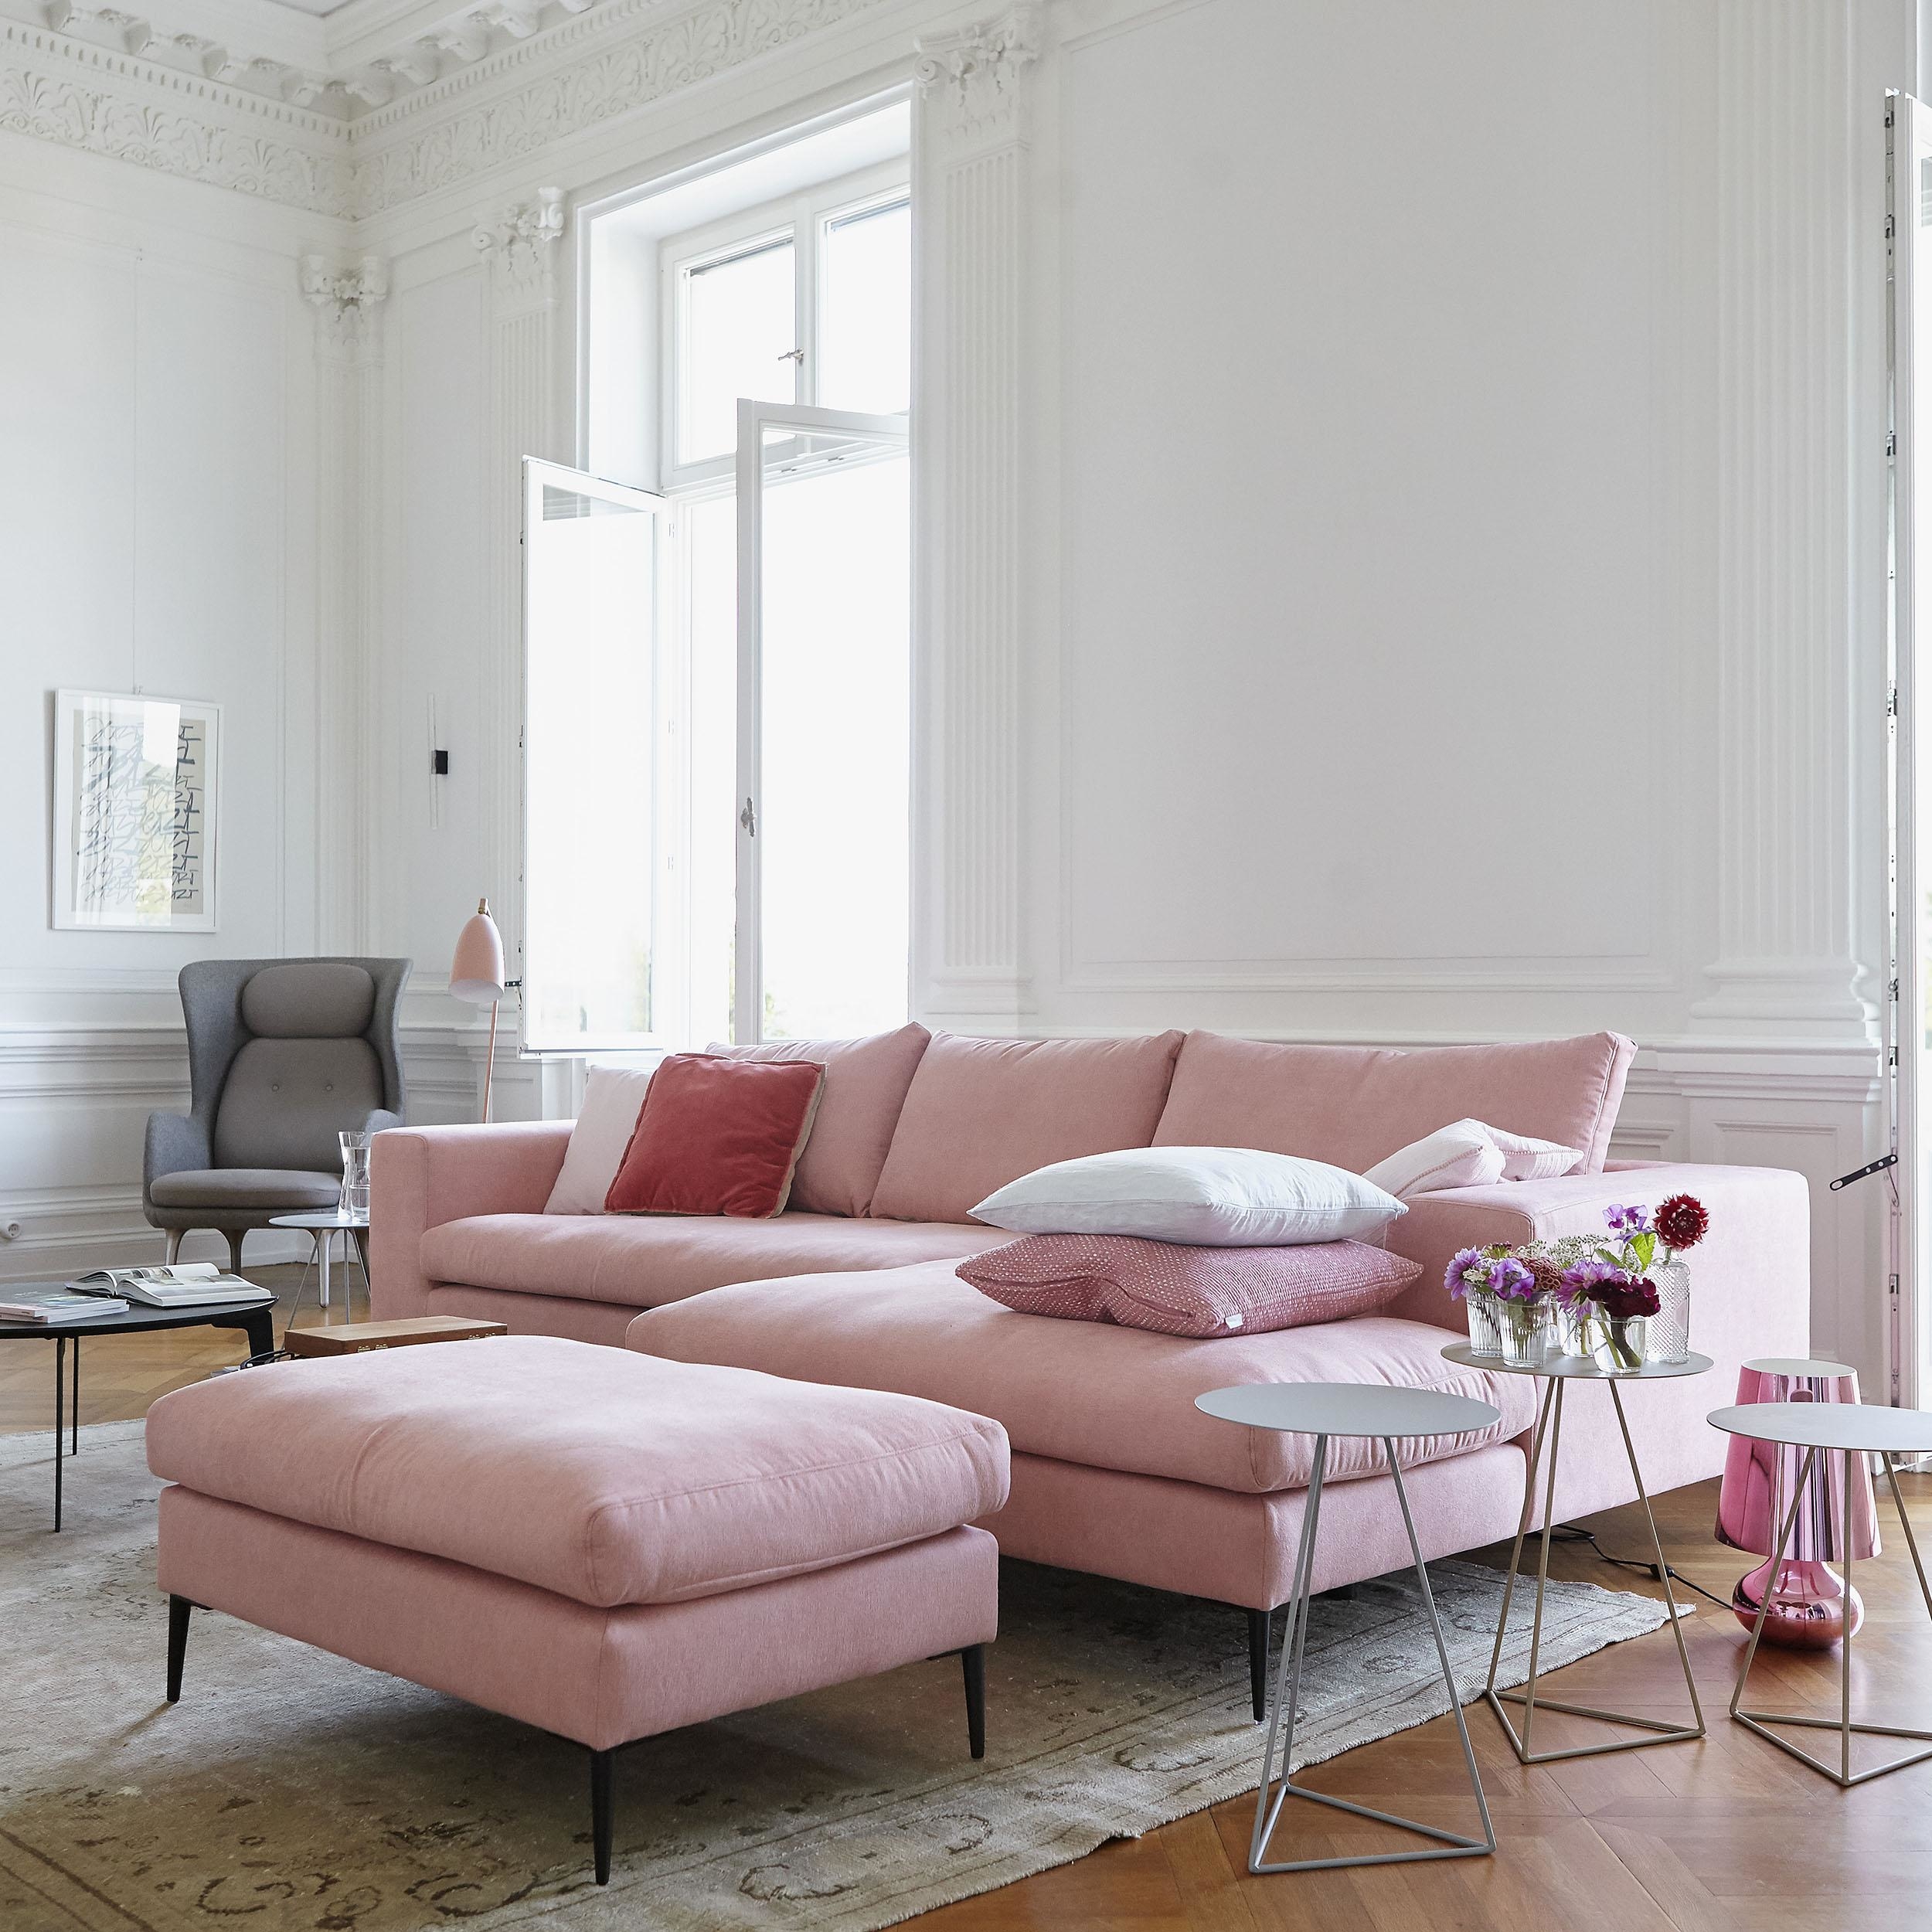 sofas millennial bigsofa curatedinterior millwork salotto ruang keluarga ikarus soggiorno roomido couchstyle auswählen sofaecke wohntraum gemuetliche 868d 50b9